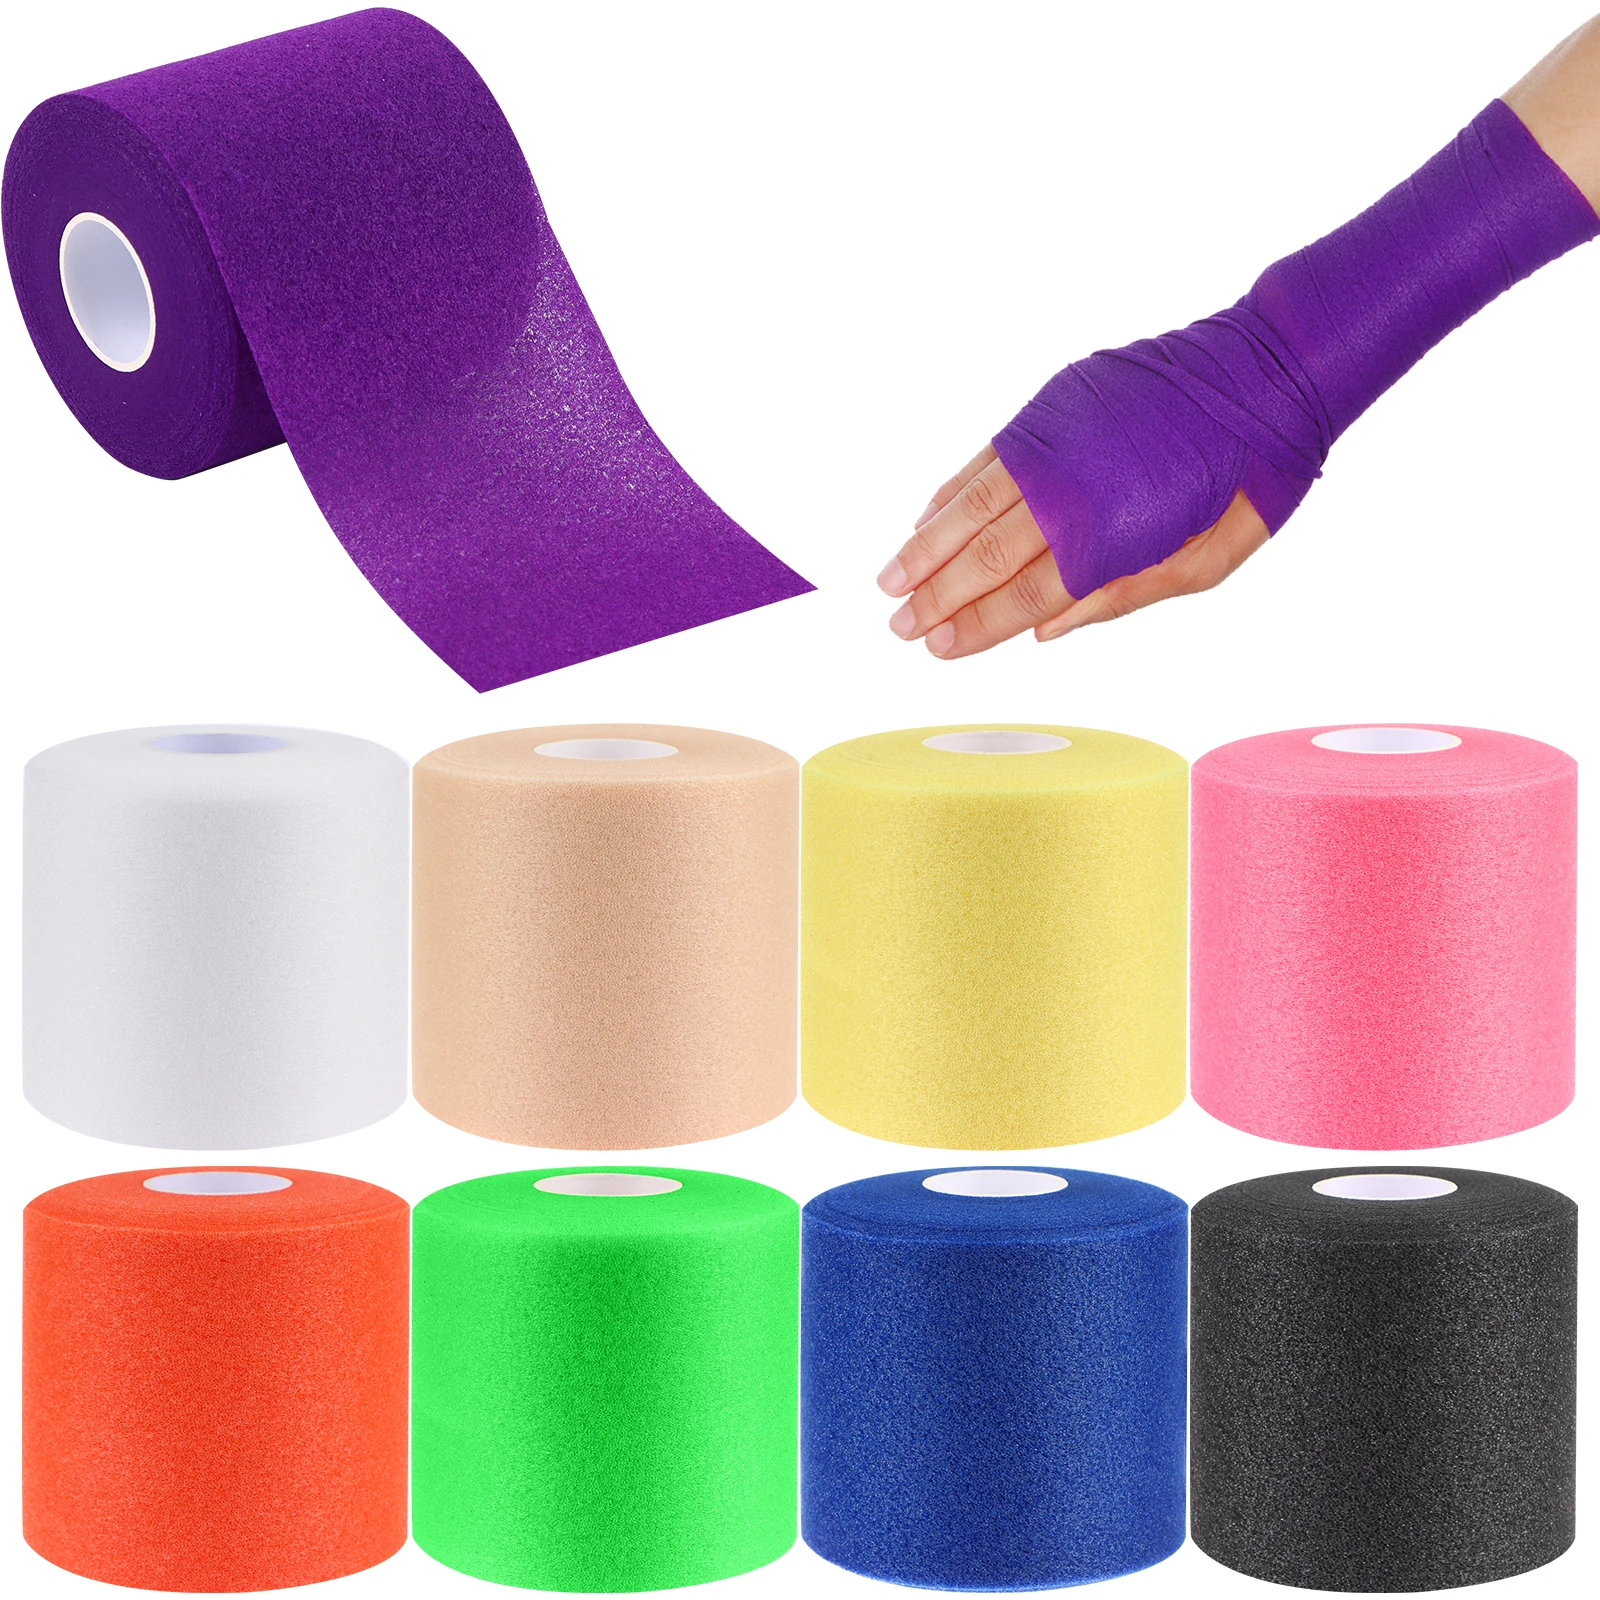 8 рулонов спортивной пенопластовой ленты Colorful Athletic Pre Wrap 2,5-дюймовая спортивная пенопластовая лента rd для лодыжек, запястий и кистей рук - 1